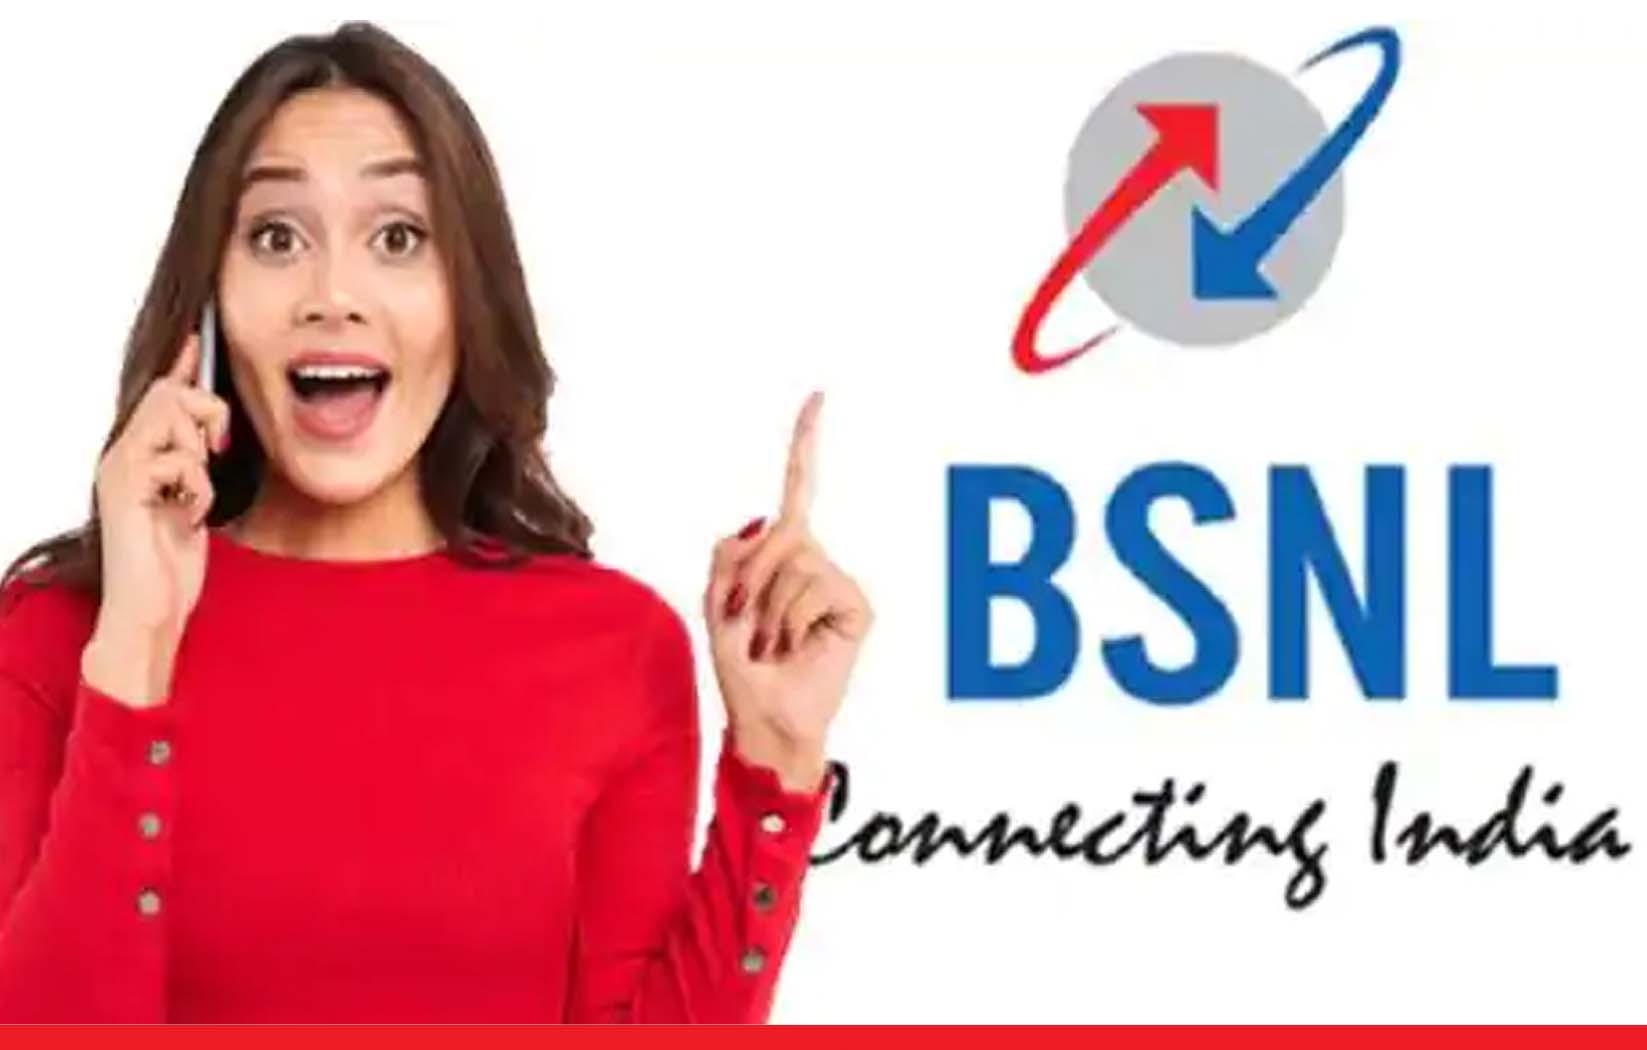 BSNL का काफी सस्ता प्लान! सिर्फ 75 रुपये में मिलती है फ्री कॉलिंग और इंटरनेट डेटा